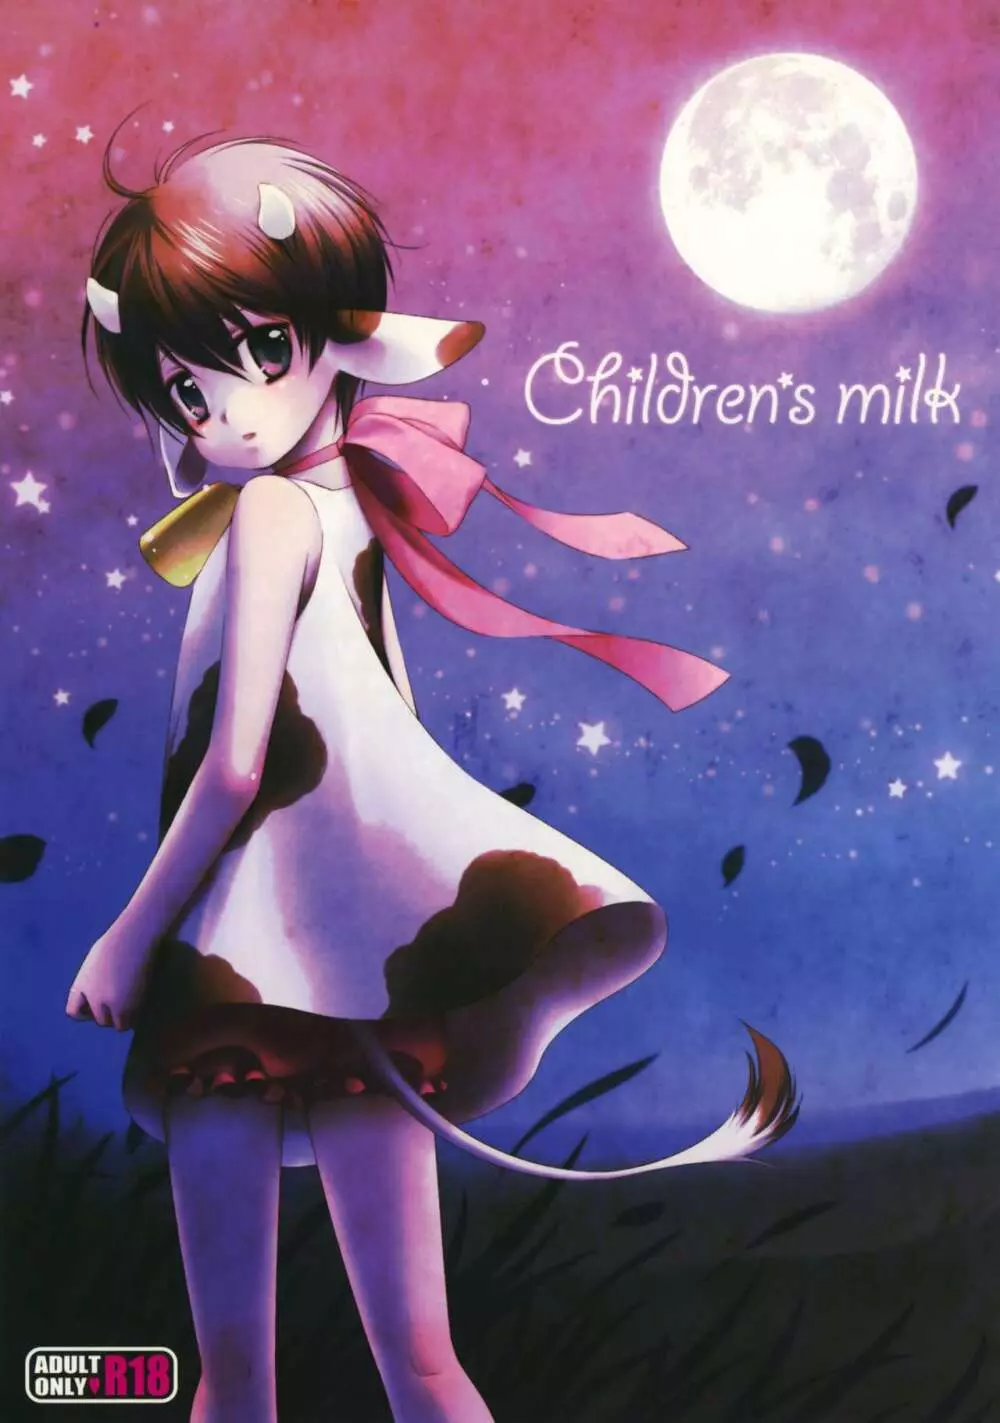 Children’s milk